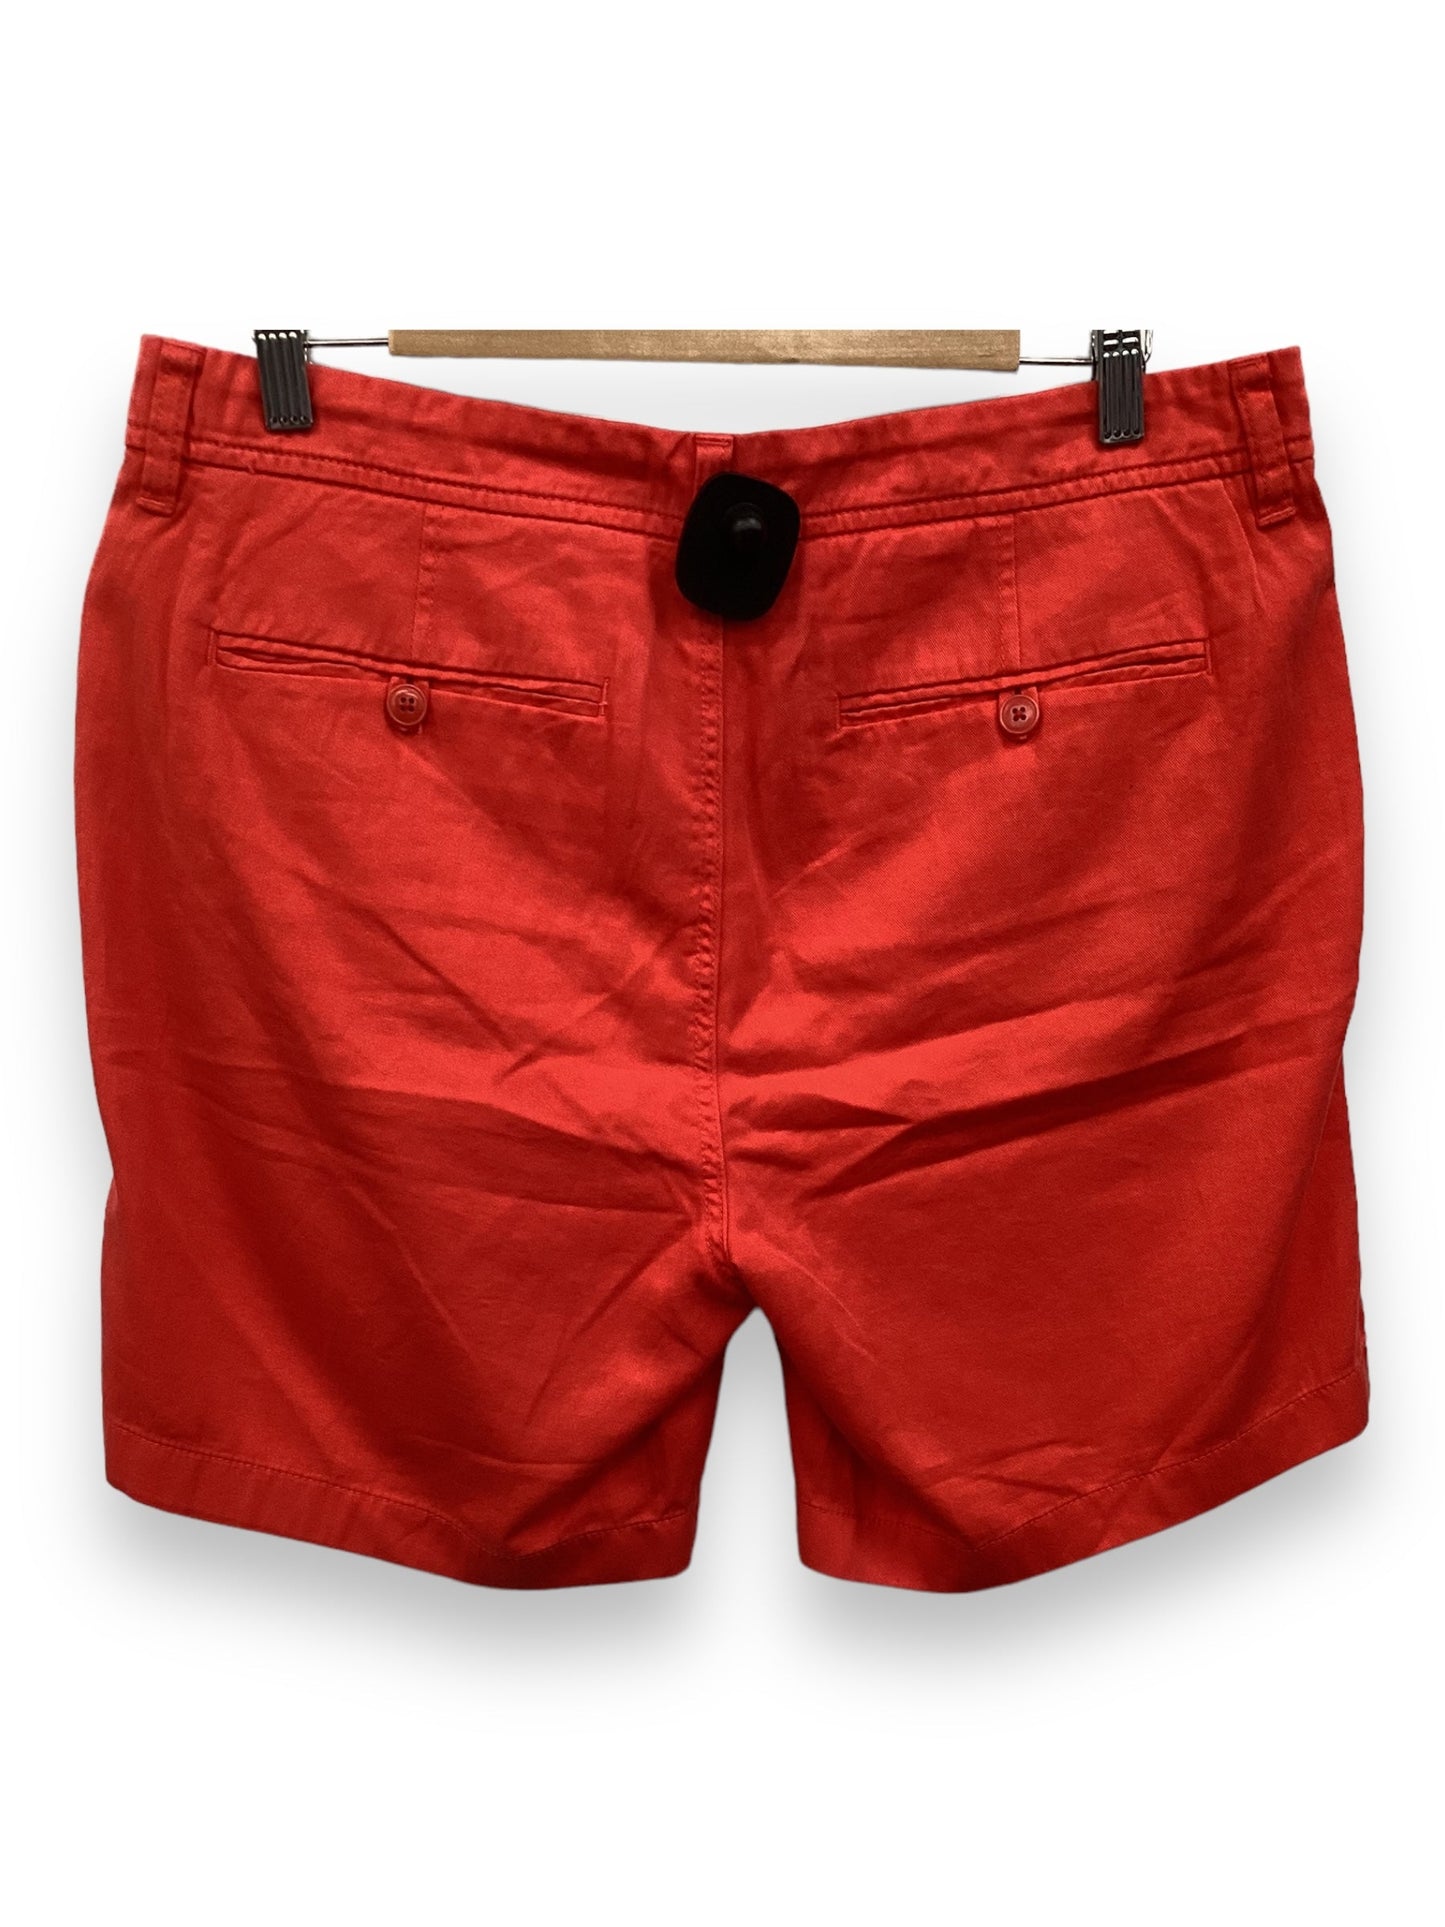 Orange Shorts J. Crew, Size 10